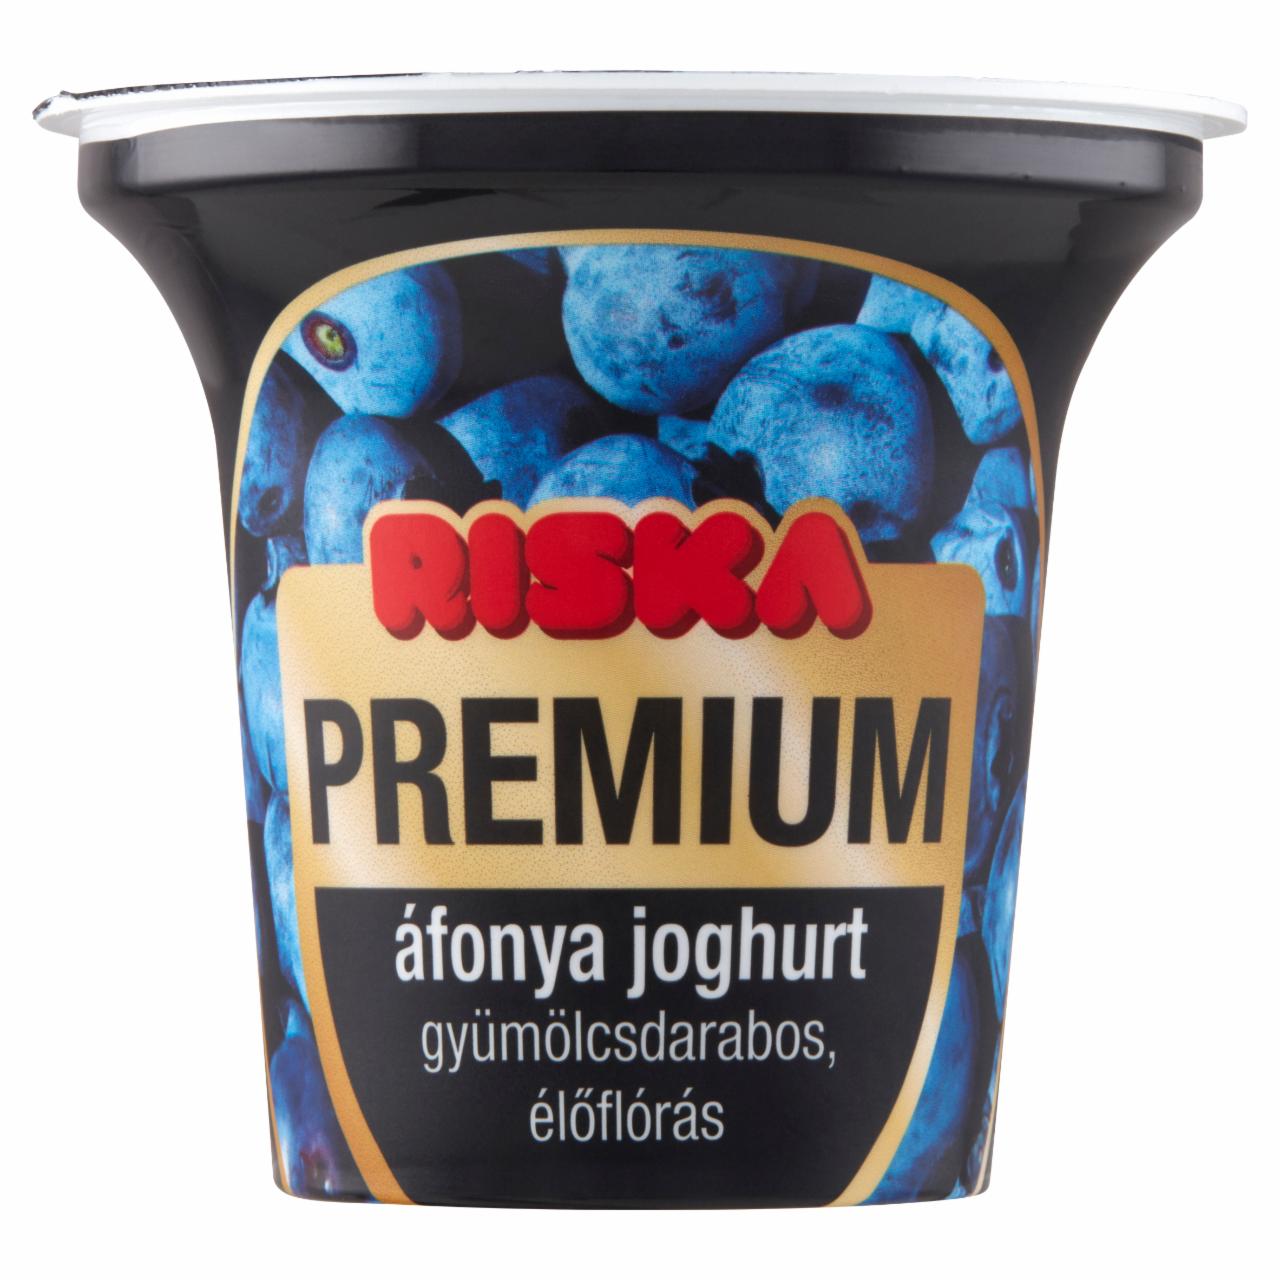 Képek - Riska Premium gyümölcsdarabos, élőflórás áfonya joghurt 200 g